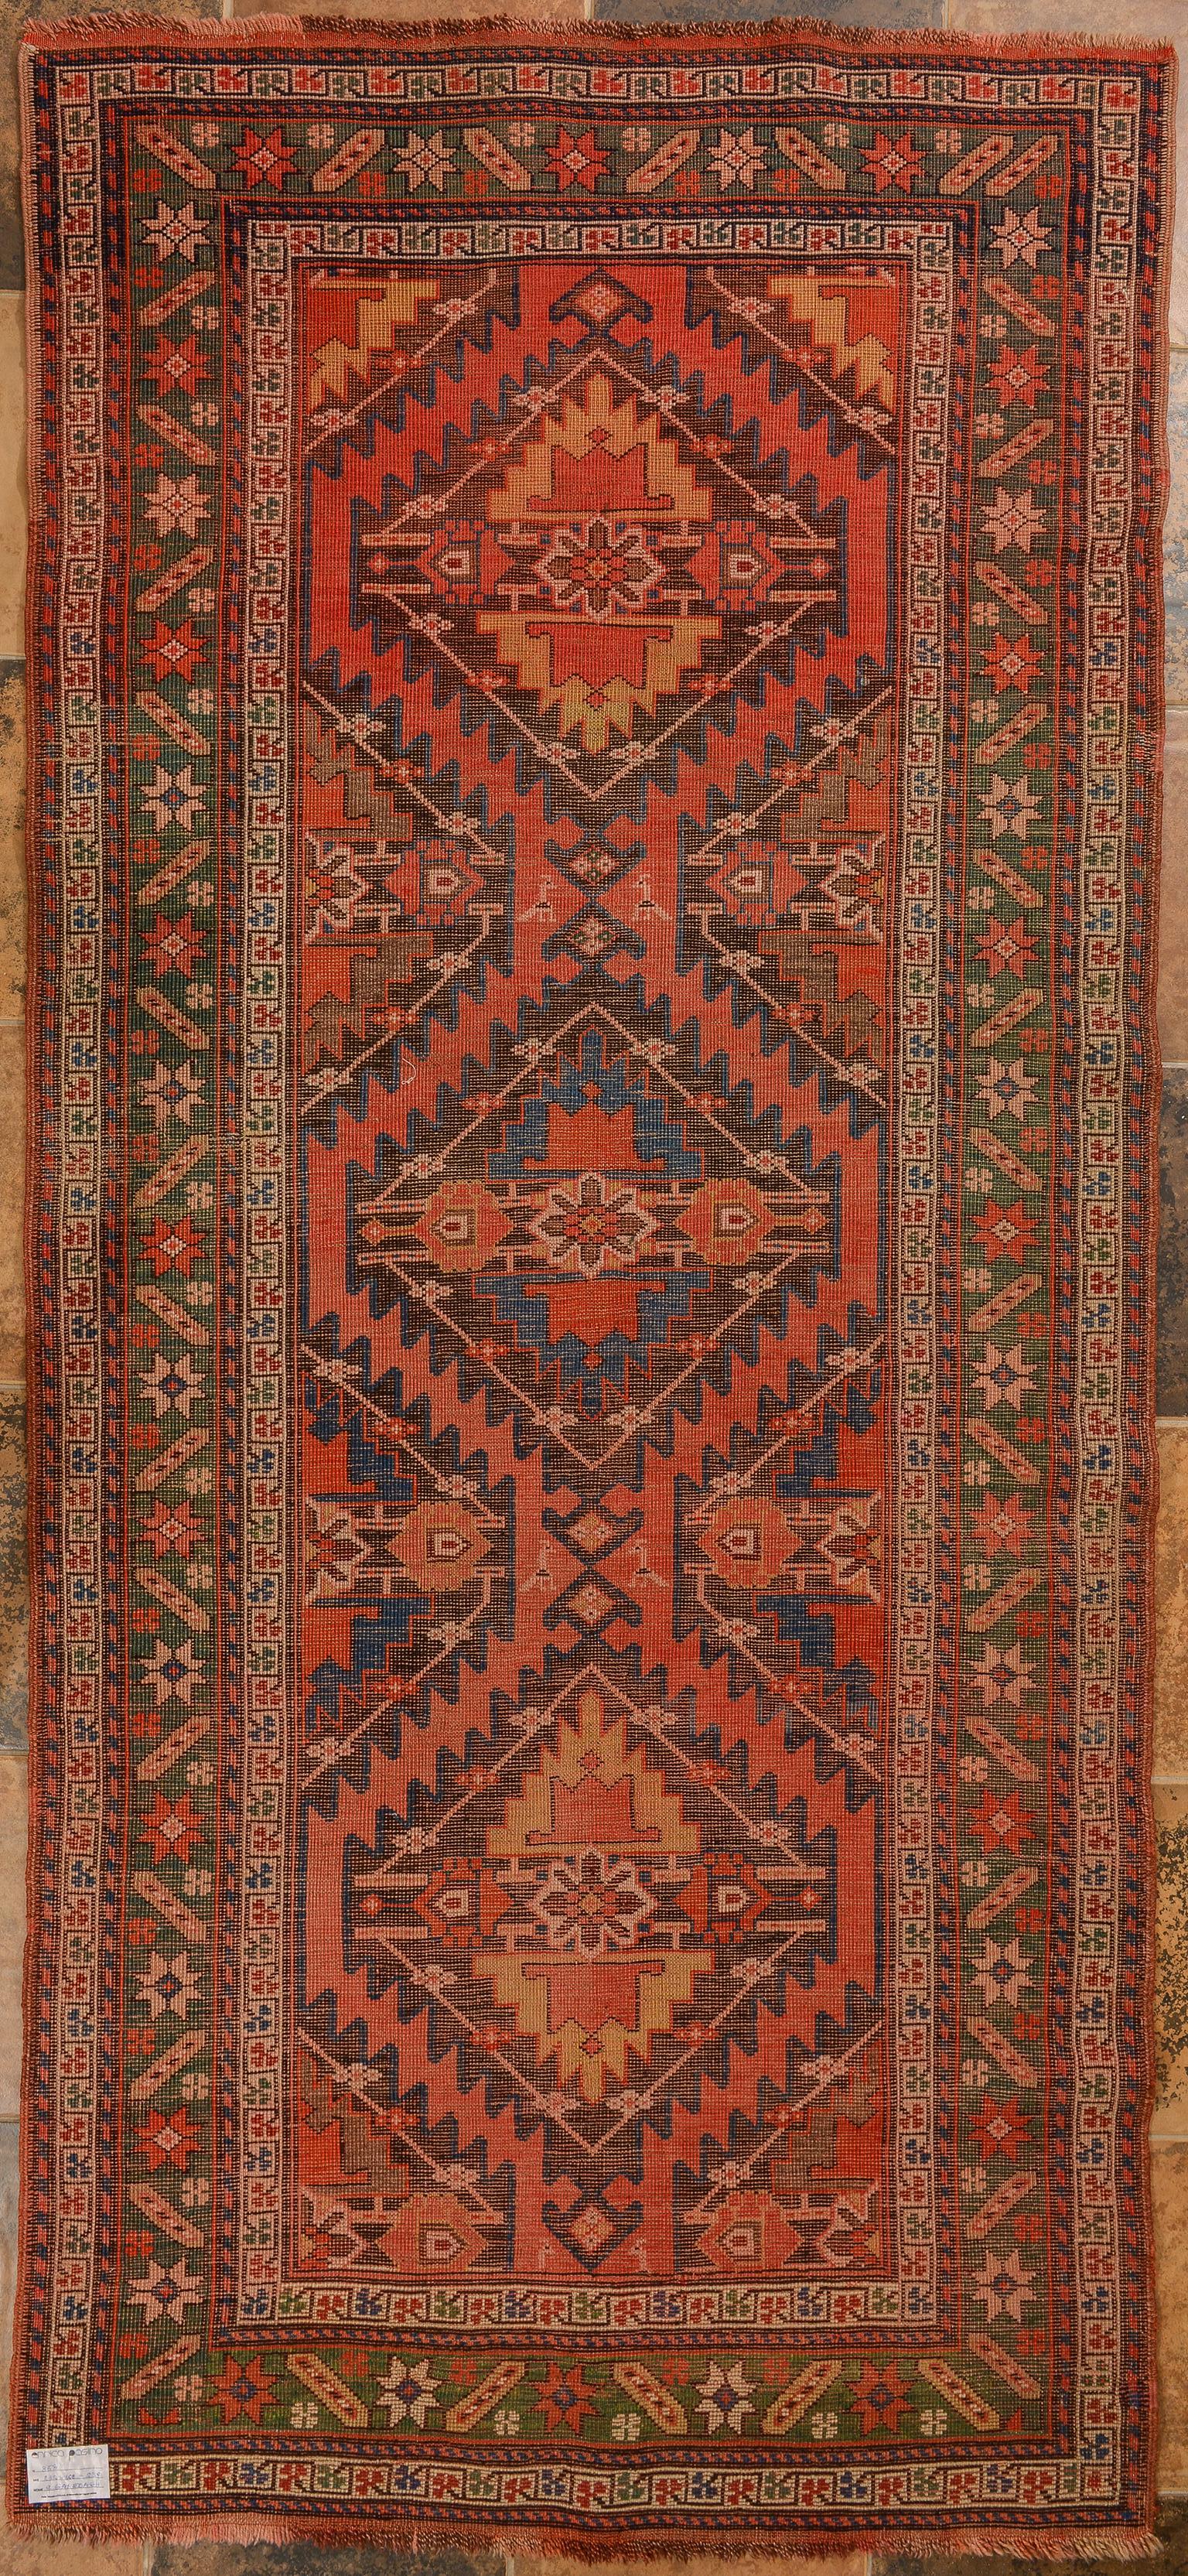 nr. 858 -  Korallenrosa Hintergrund mit grünem Rand für diesen schönen kaukasischen Teppich aus Karabagh (oder Garebagh) -
Meine Teppiche lassen sich von Moden nicht beeinflussen. Nach einem Jahr sind die neuen modernen Teppiche ihren Preis nicht